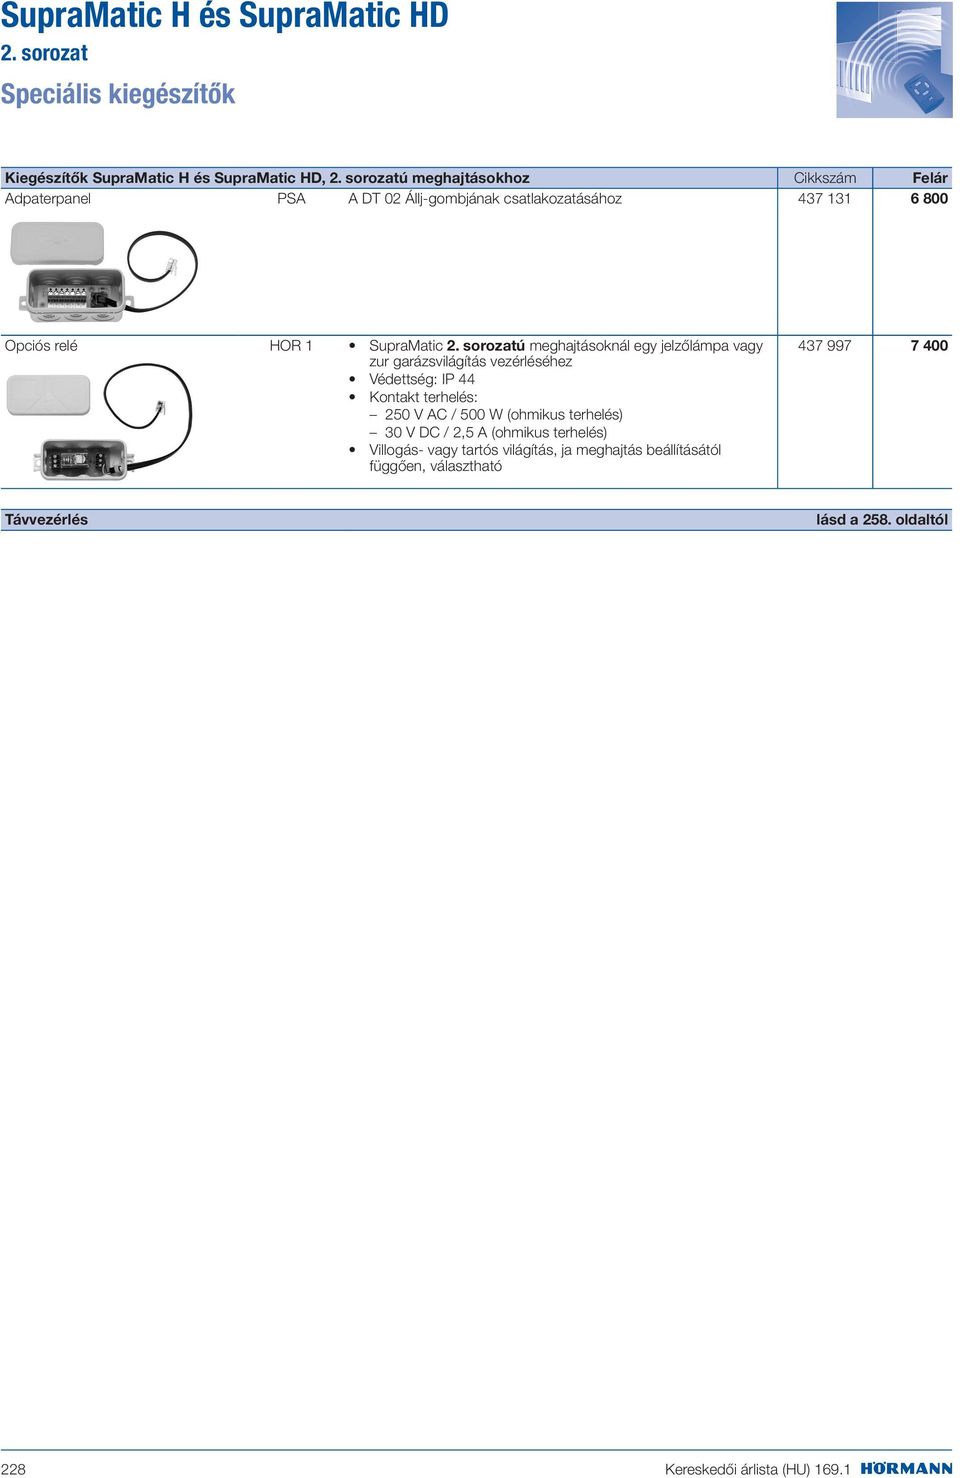 sorozatú meghajtásoknál egy jelzőlámpa vagy zur garázsvilágítás vezérléséhez Védettség: IP 44 Kontakt terhelés: 250 V AC / 500 W (ohmikus terhelés)